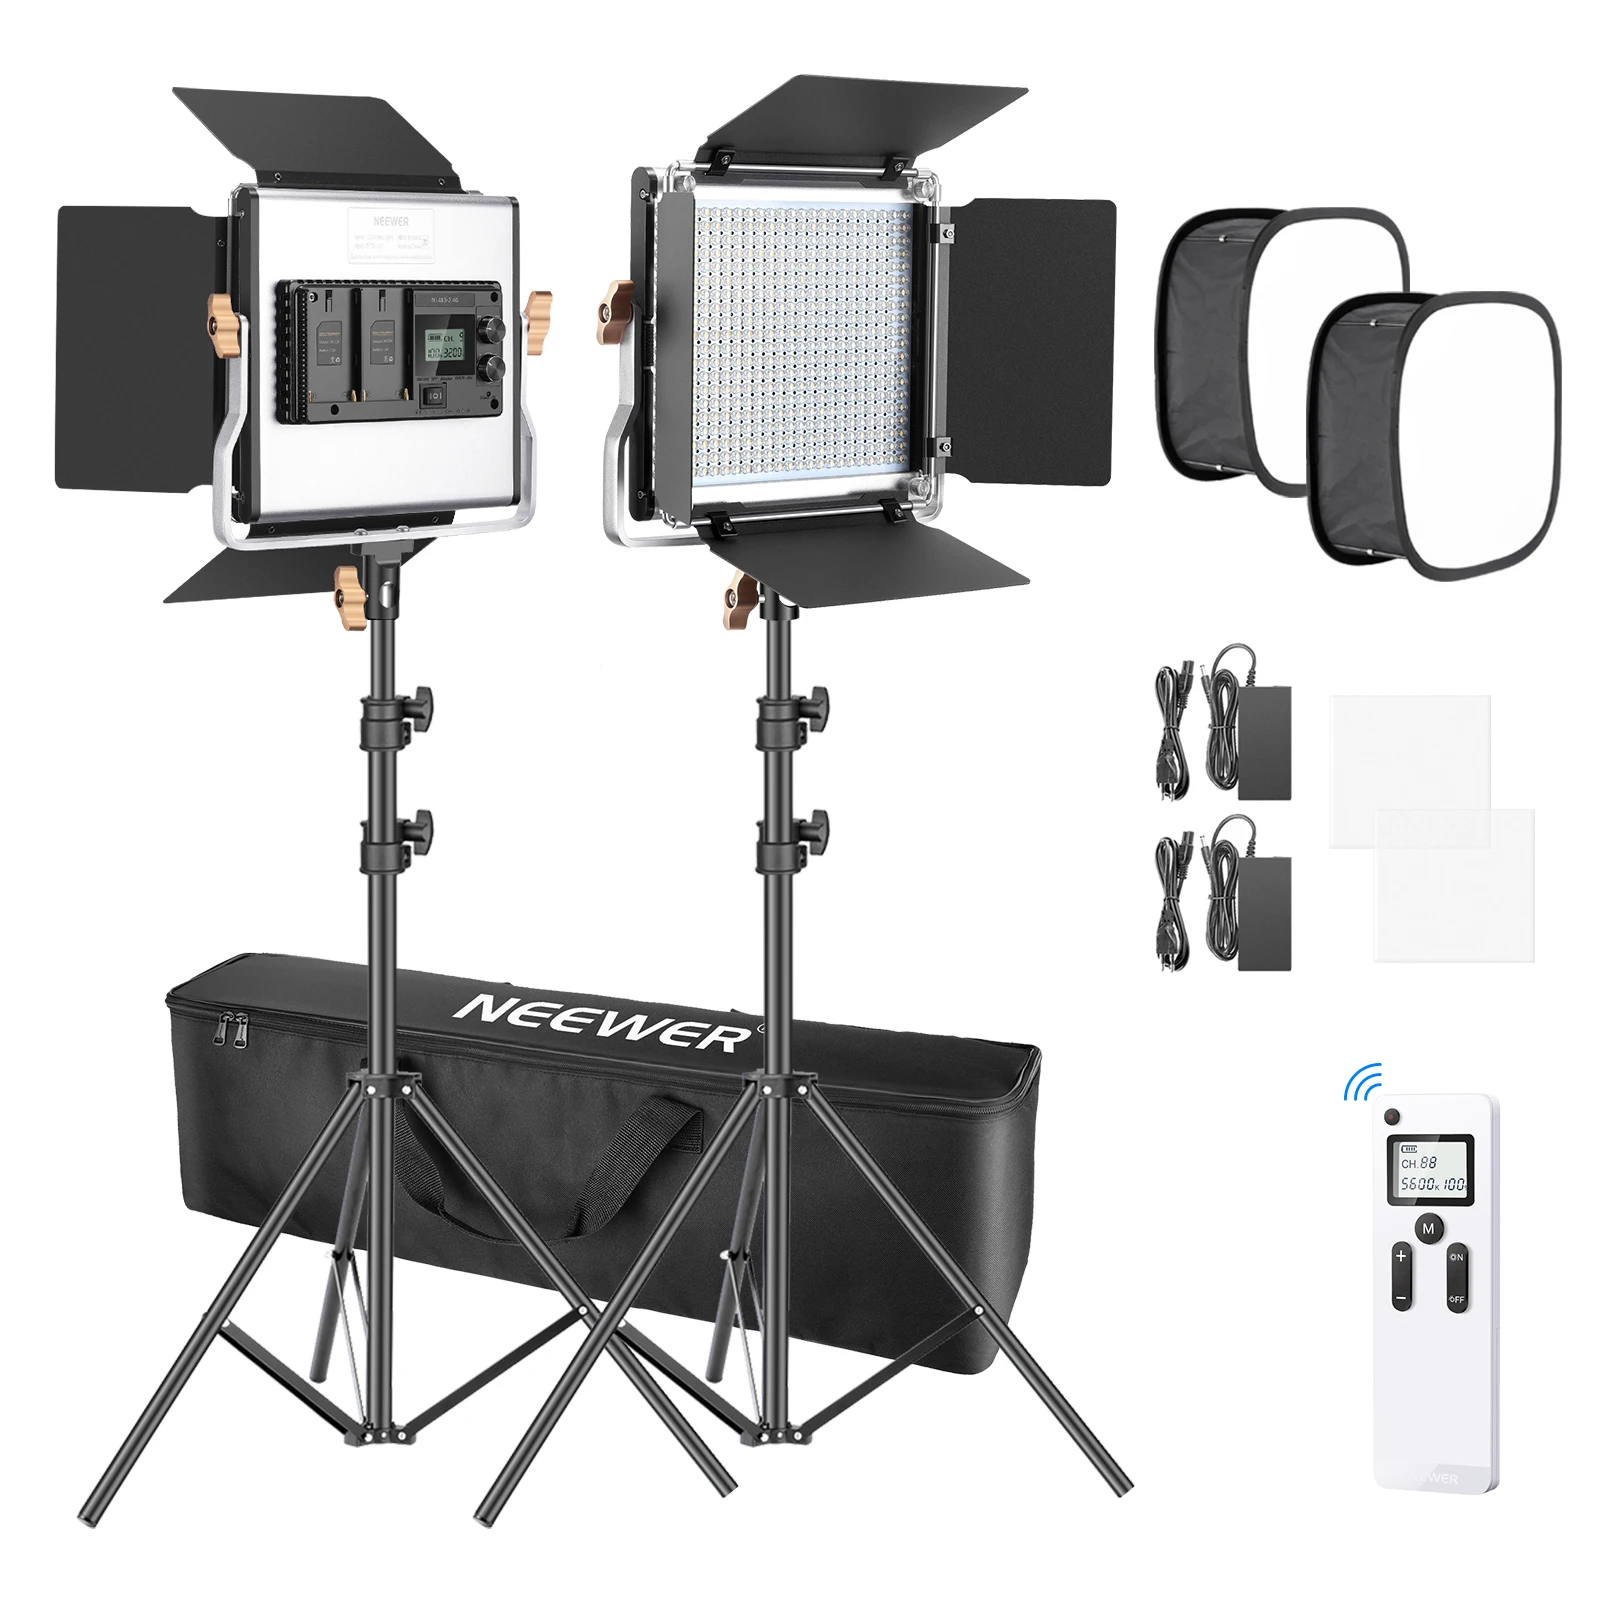 Neewer 2 Paket 480 LED Video İşığı Fotoğraf Aydınlatma Kiti, LED Panel ile 2.4 G Kablosuz Uzaktan Kumanda, 480 LED Panel ve ışık Standı